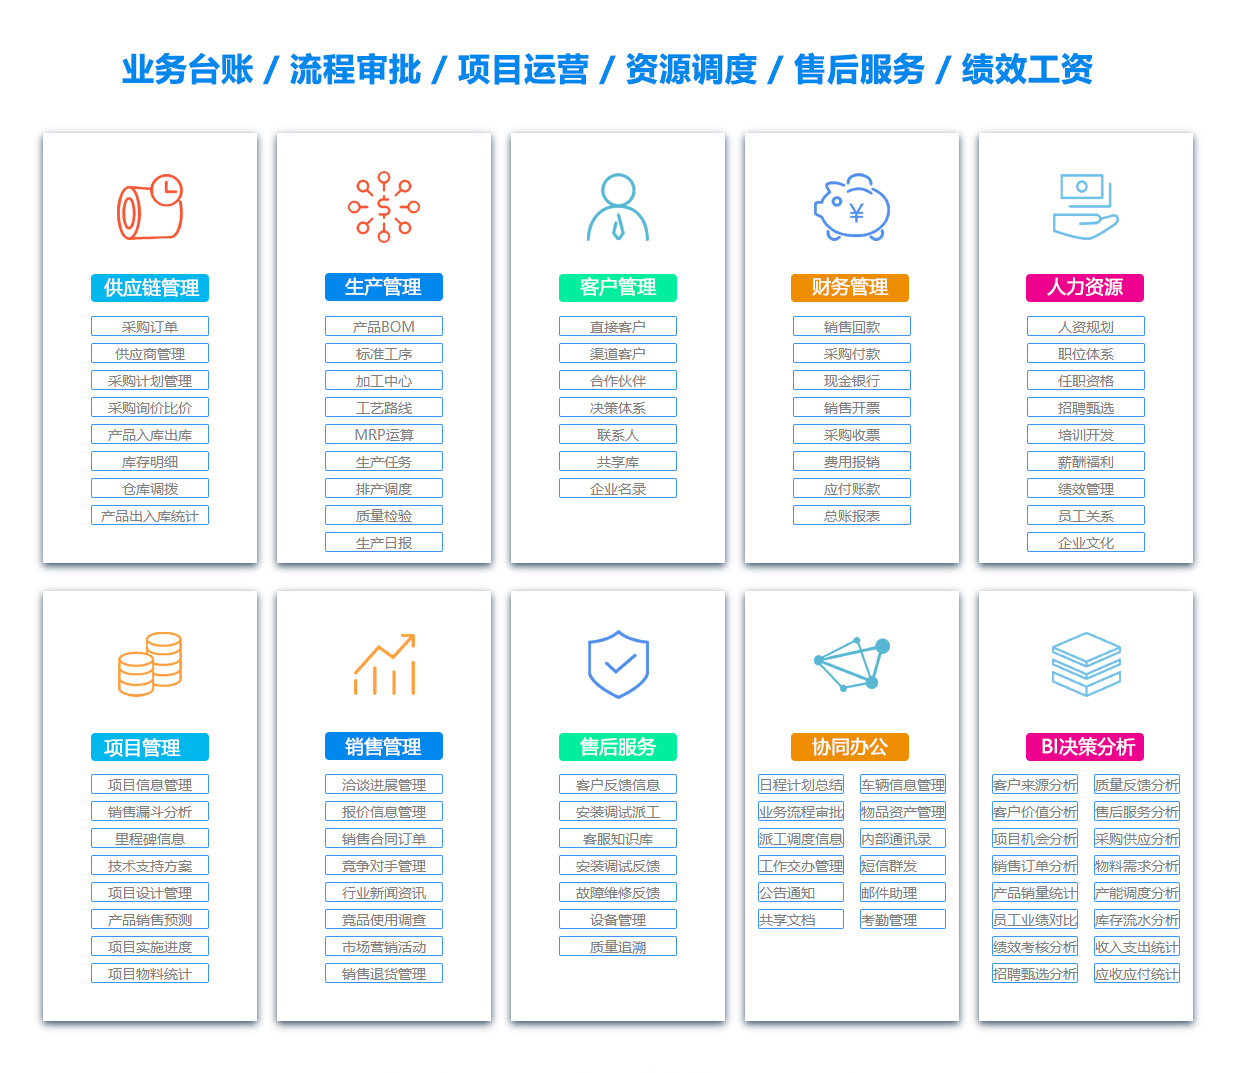 锦州PDM:产品数据管理系统